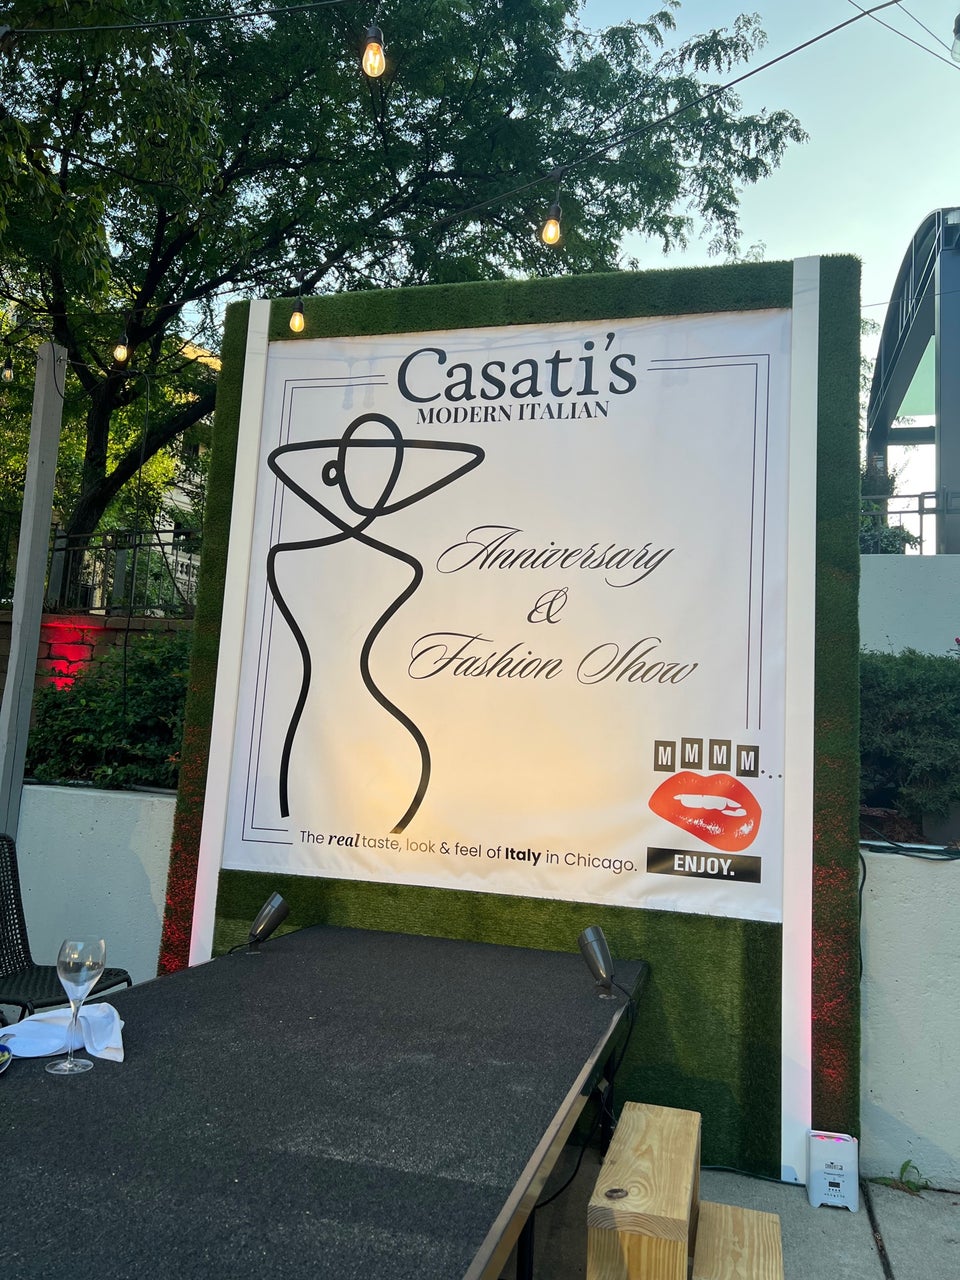 Casati's Modern Italian